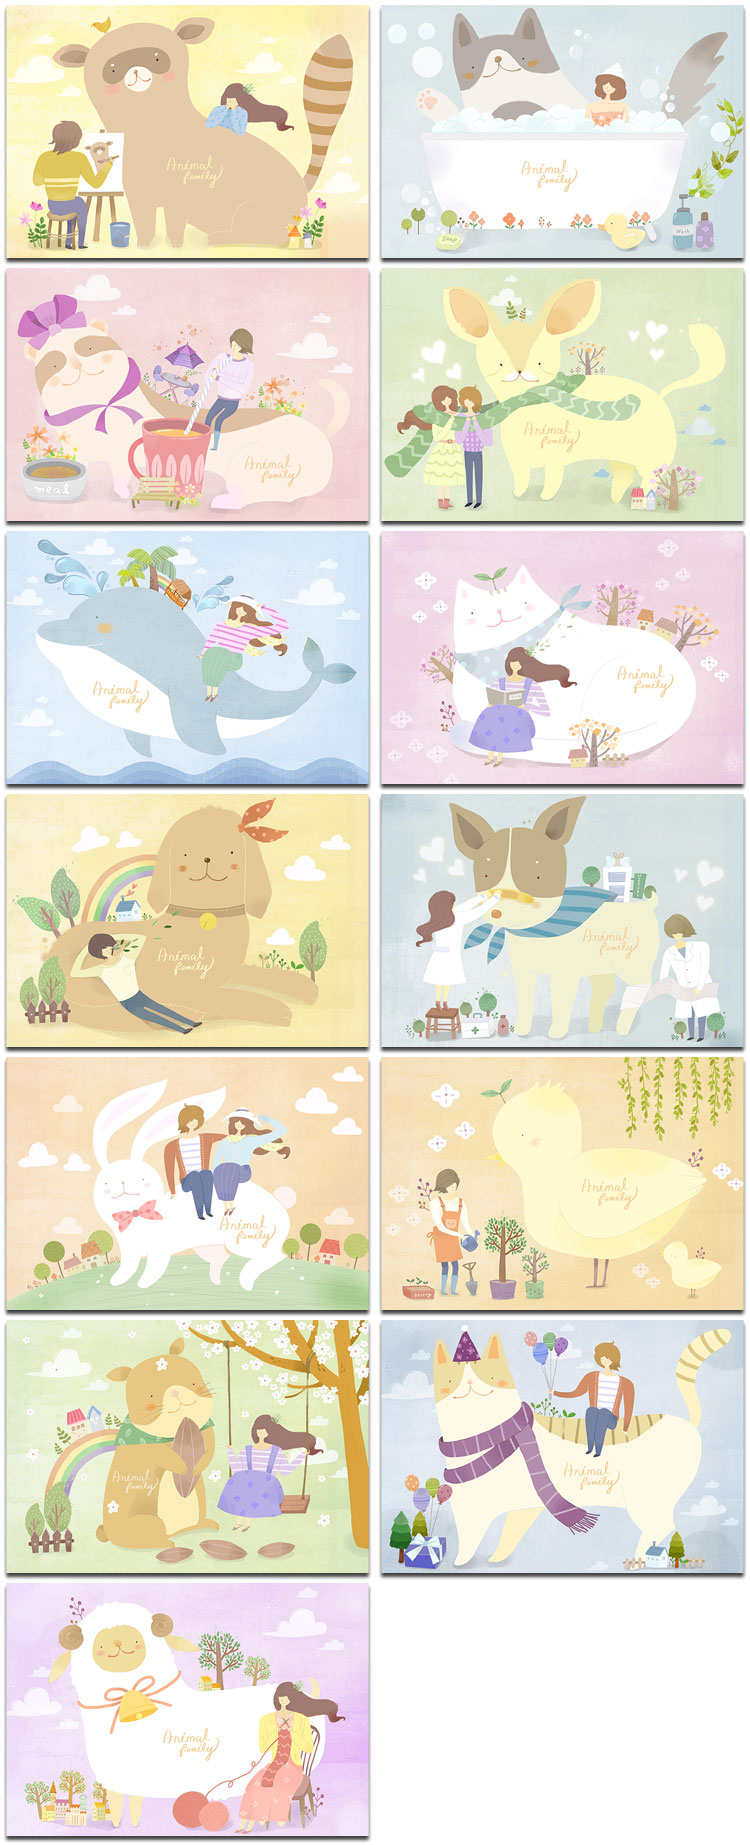 儿童卡通童话鲸鱼动物教育小孩幼儿园插图画海报psd模板设计素材